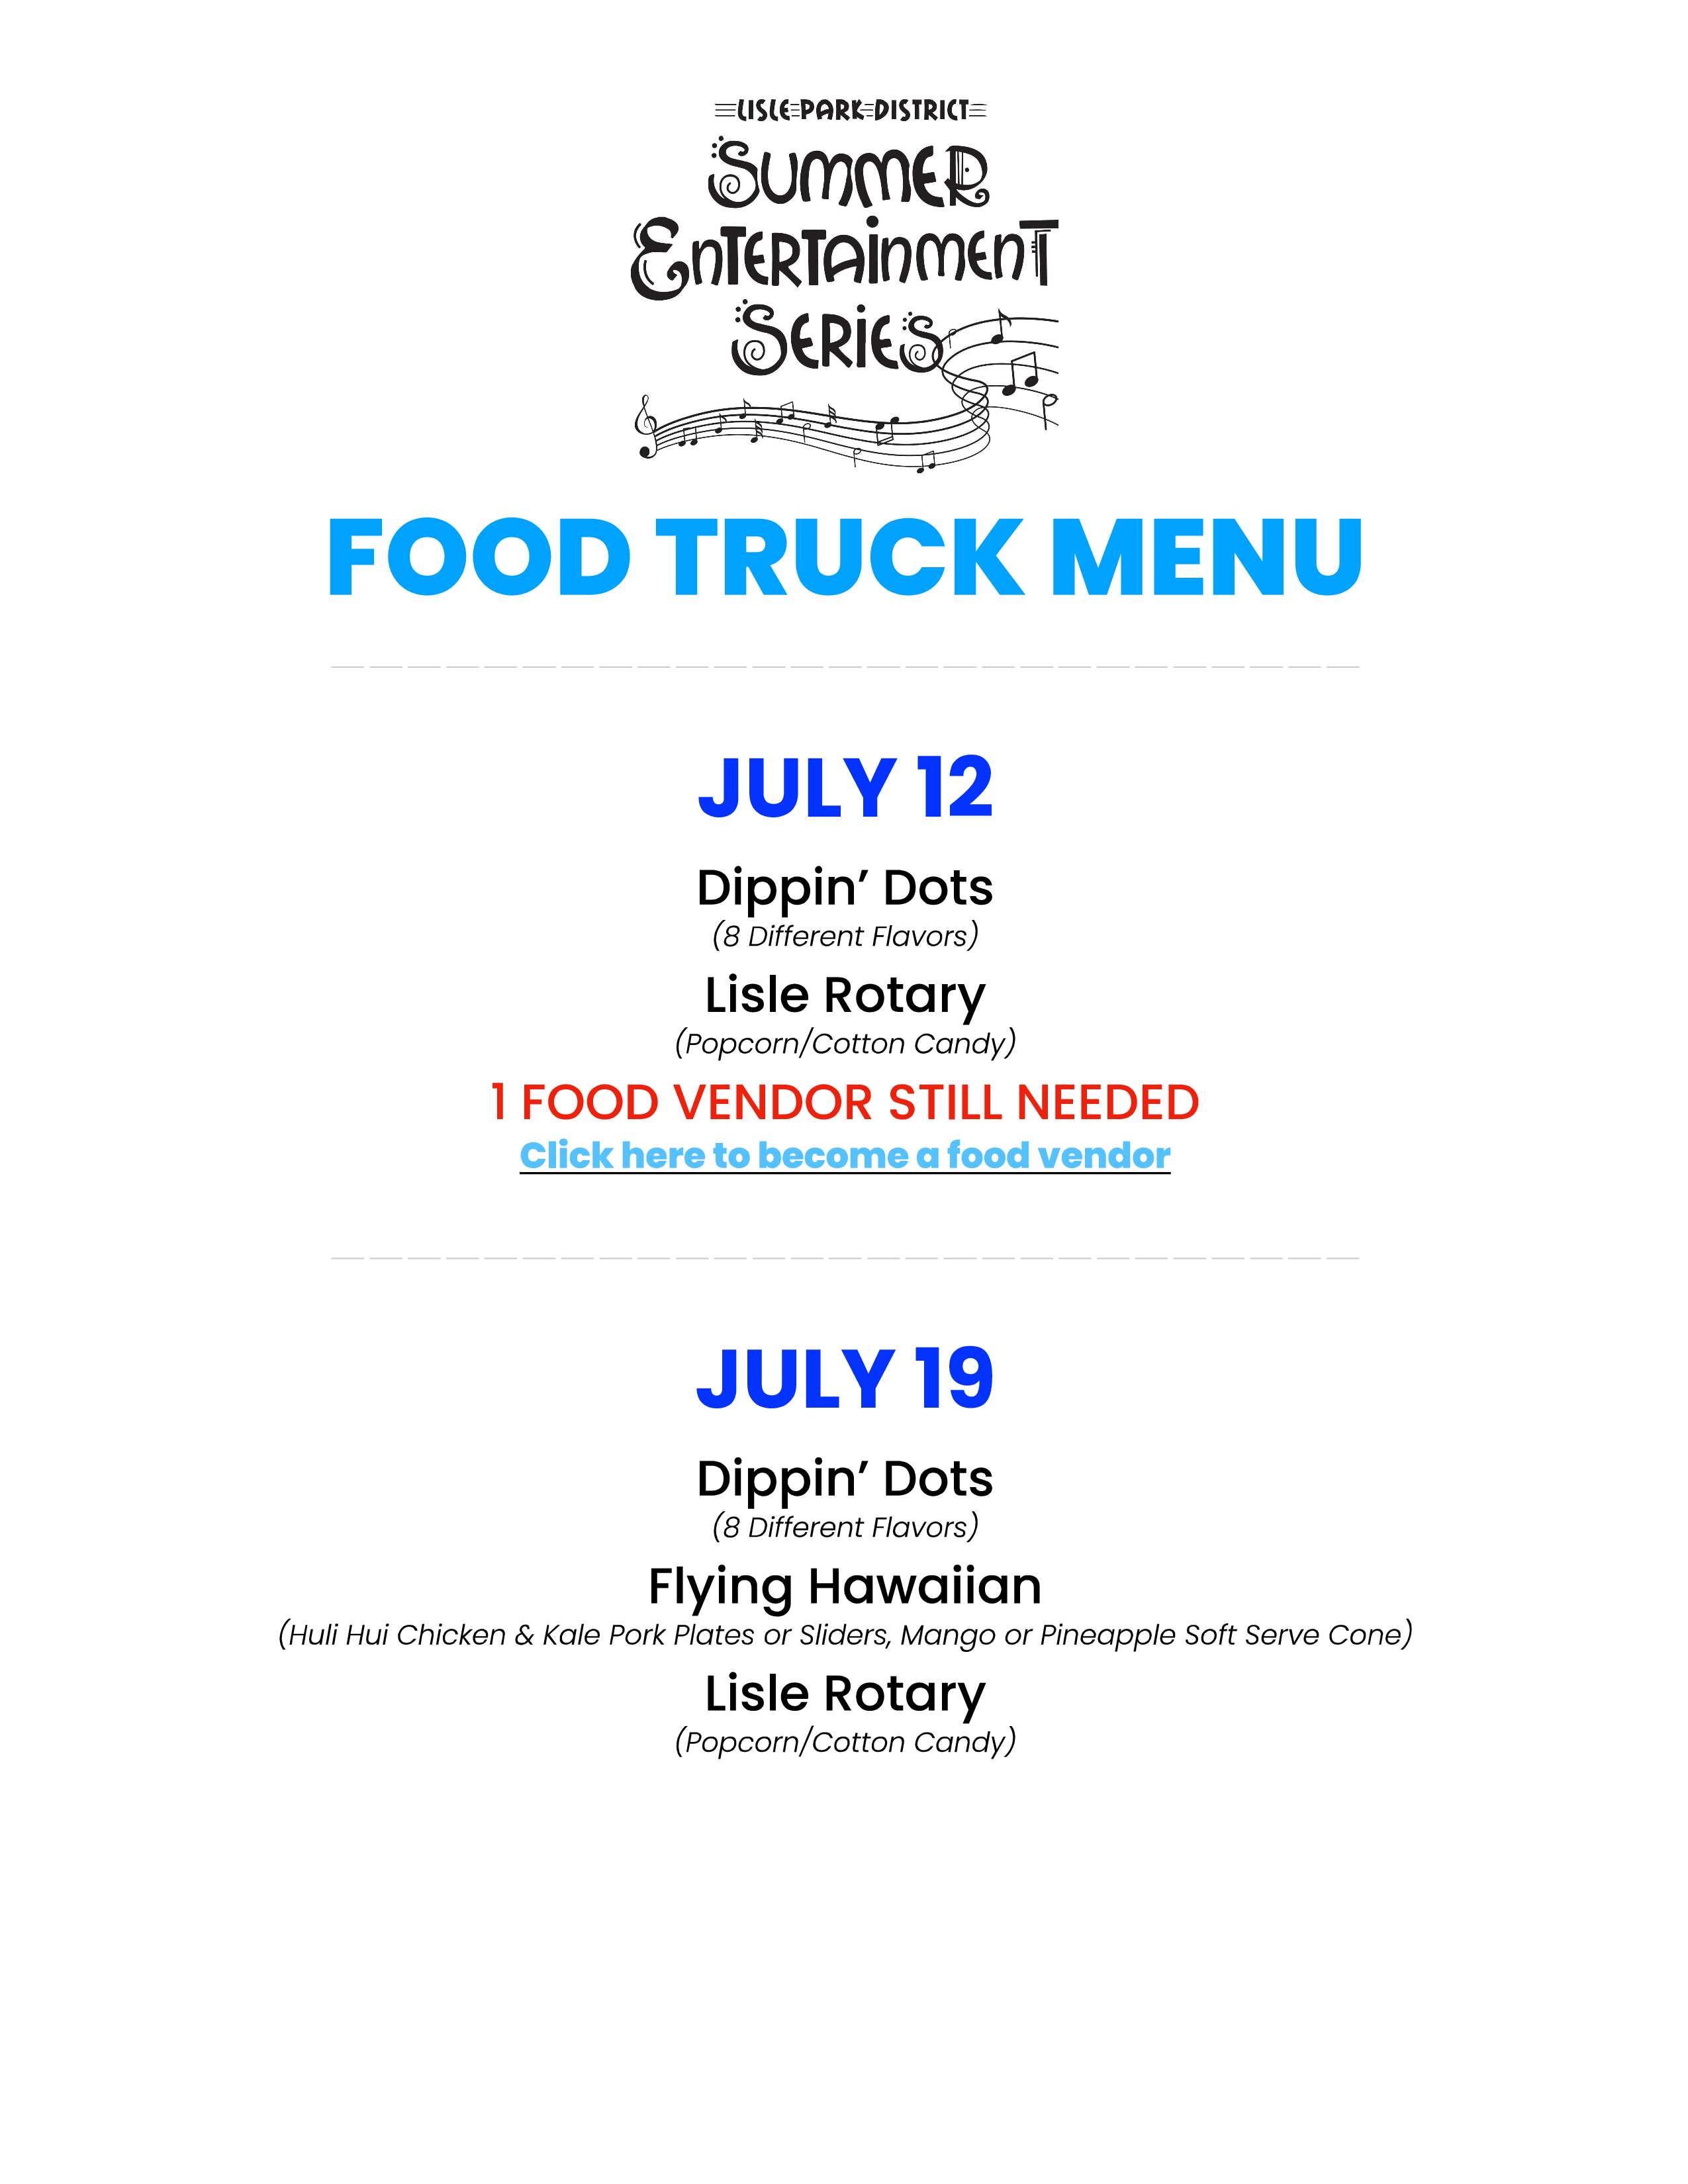 summer entertainment series food truck menu flyer